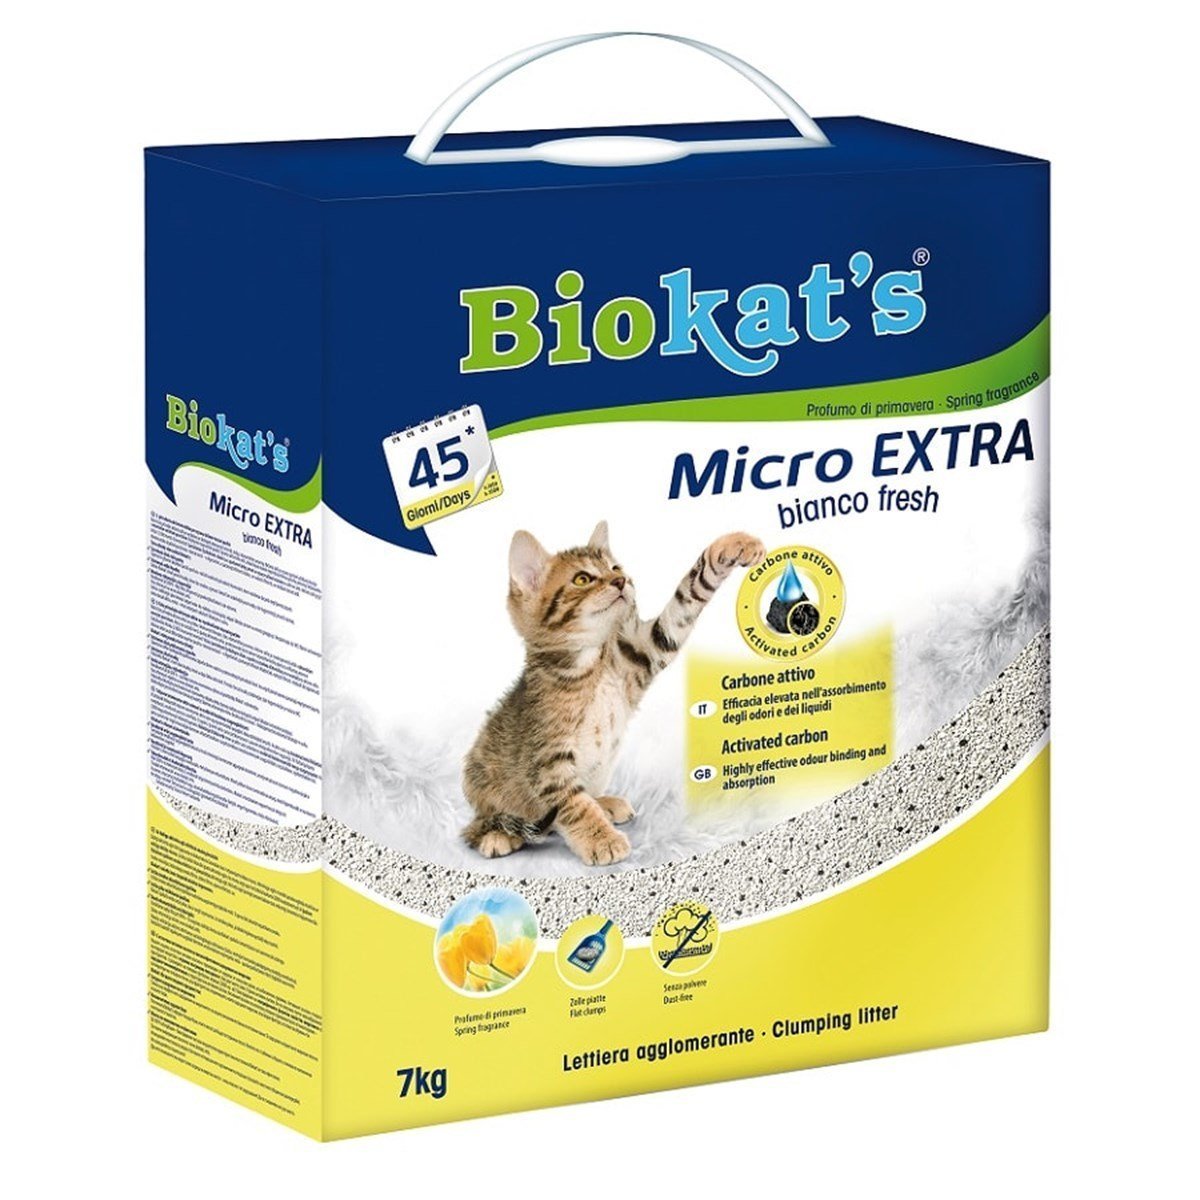 Biokats Bianco Extra Fresh Micro Kedi Kumu 7 Kg